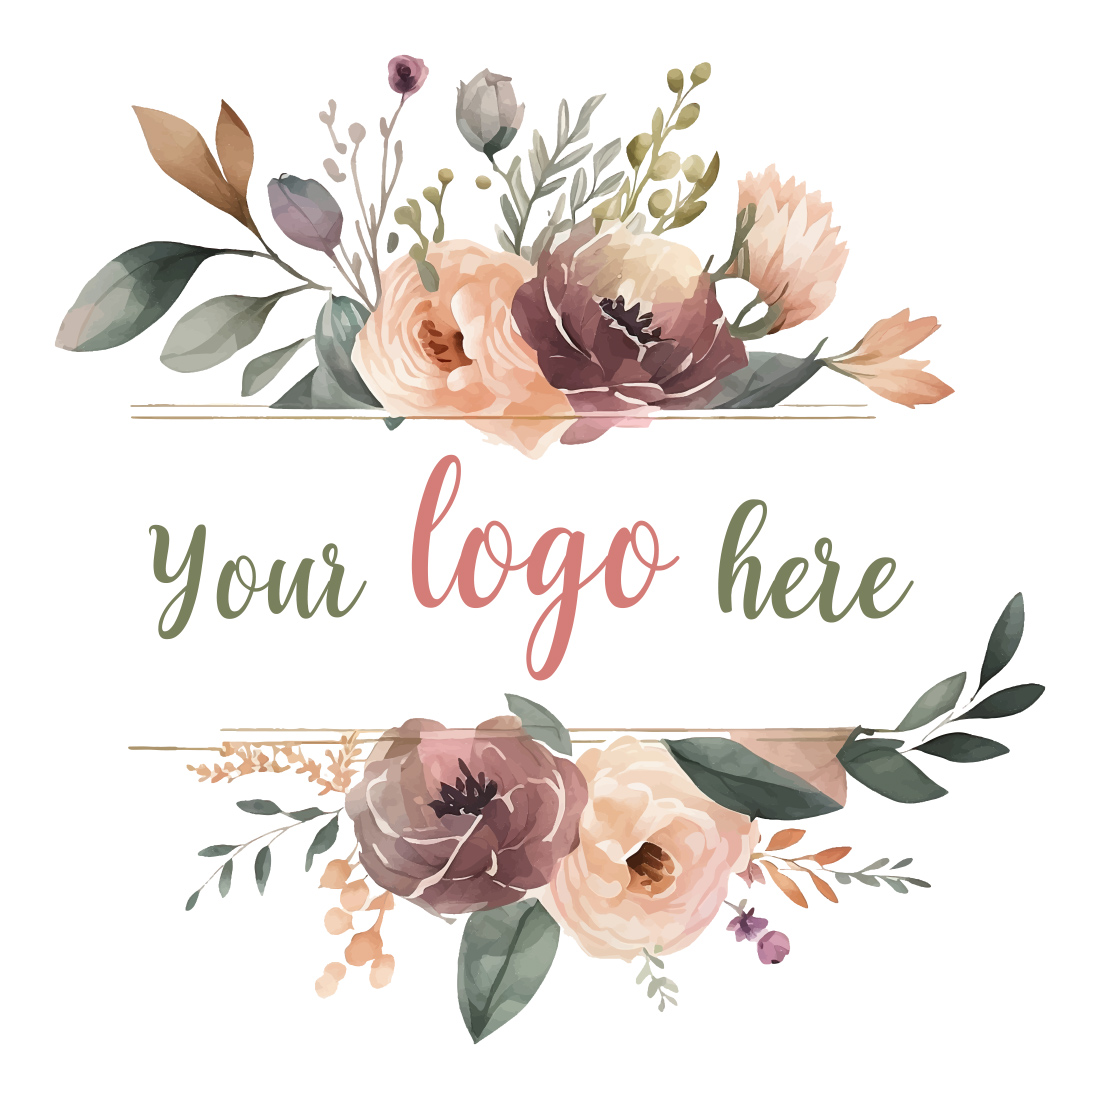 Pastel Floral Print Background in Illustrator, JPG, SVG, EPS